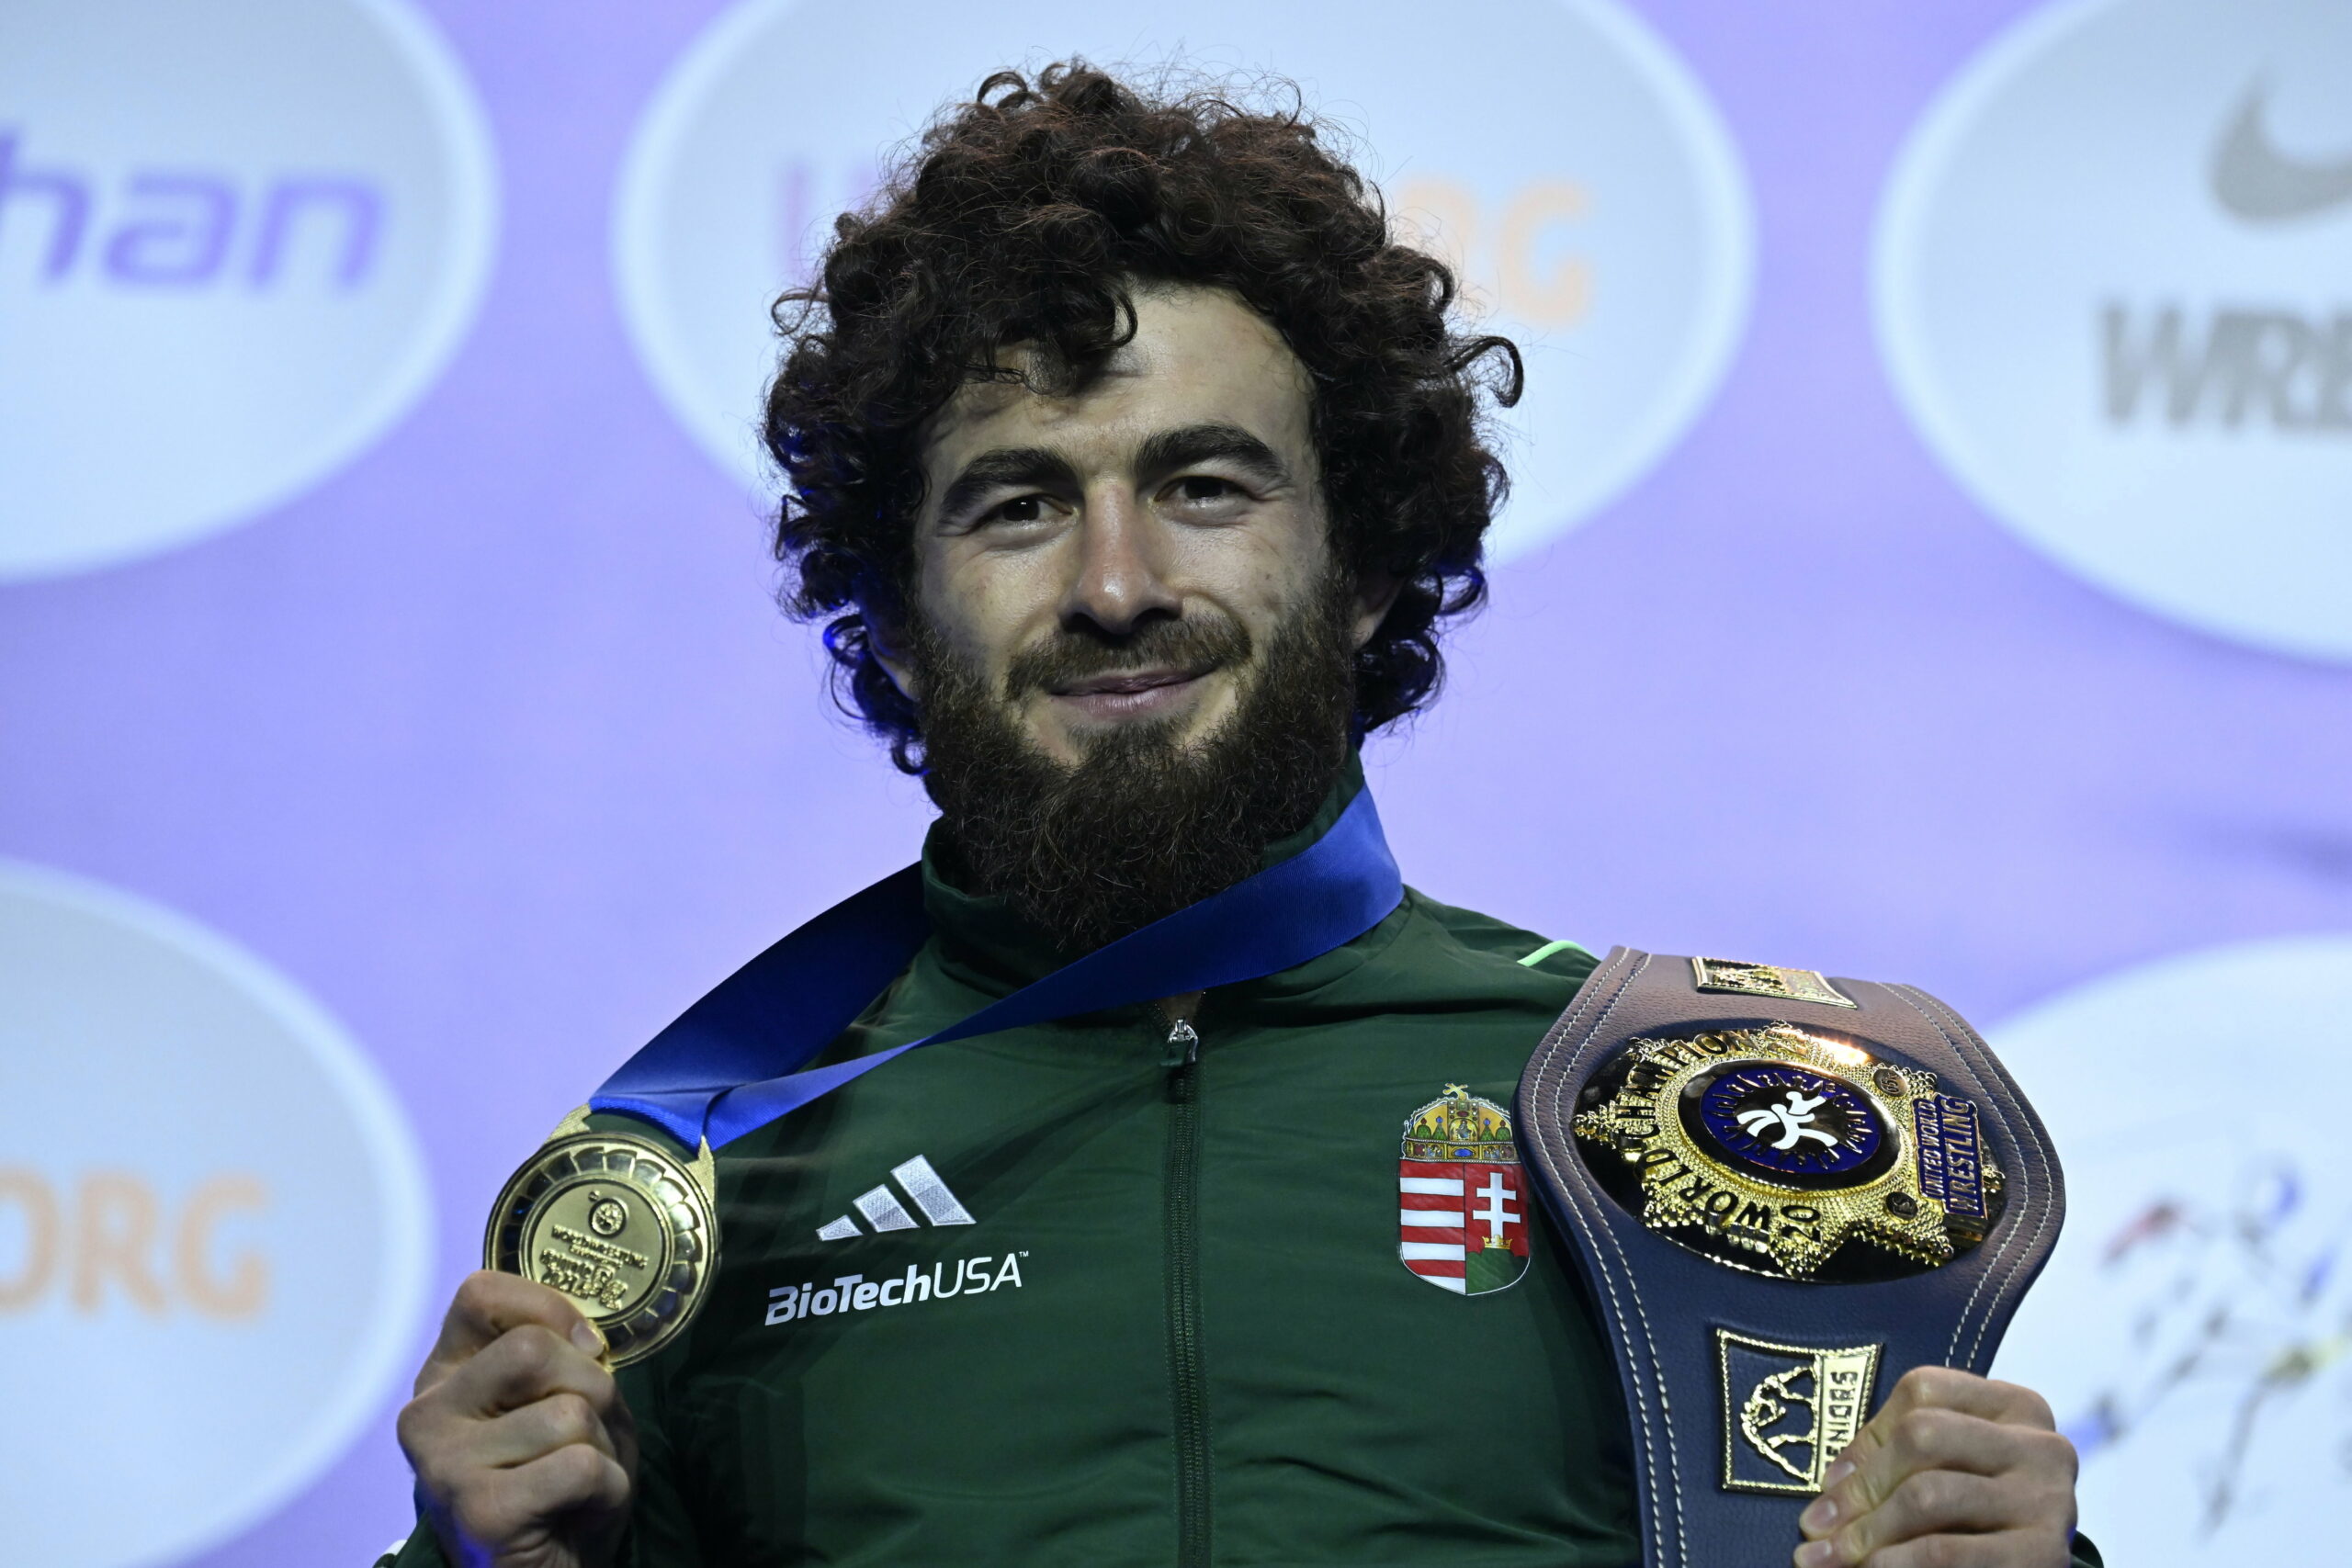 Birkózó-vb: Az FTC sportolója, Muszukajev Iszmail parádés teljesítménnyel aranyérmes